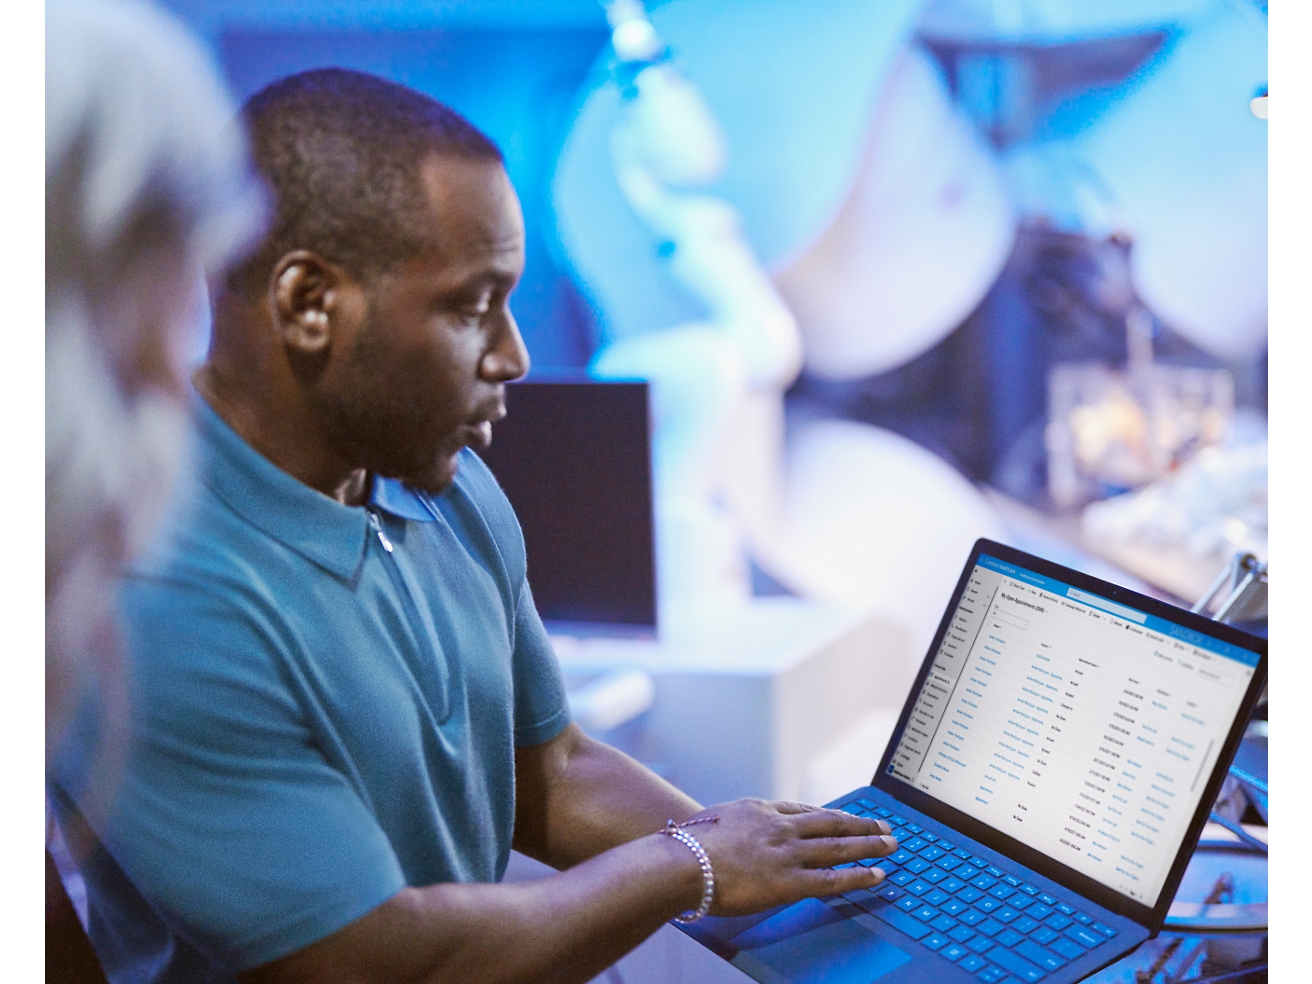 Ein Mann überprüft Daten auf einem Laptop umgeben von Kollegen in einer geschäftigen Büroumgebung.